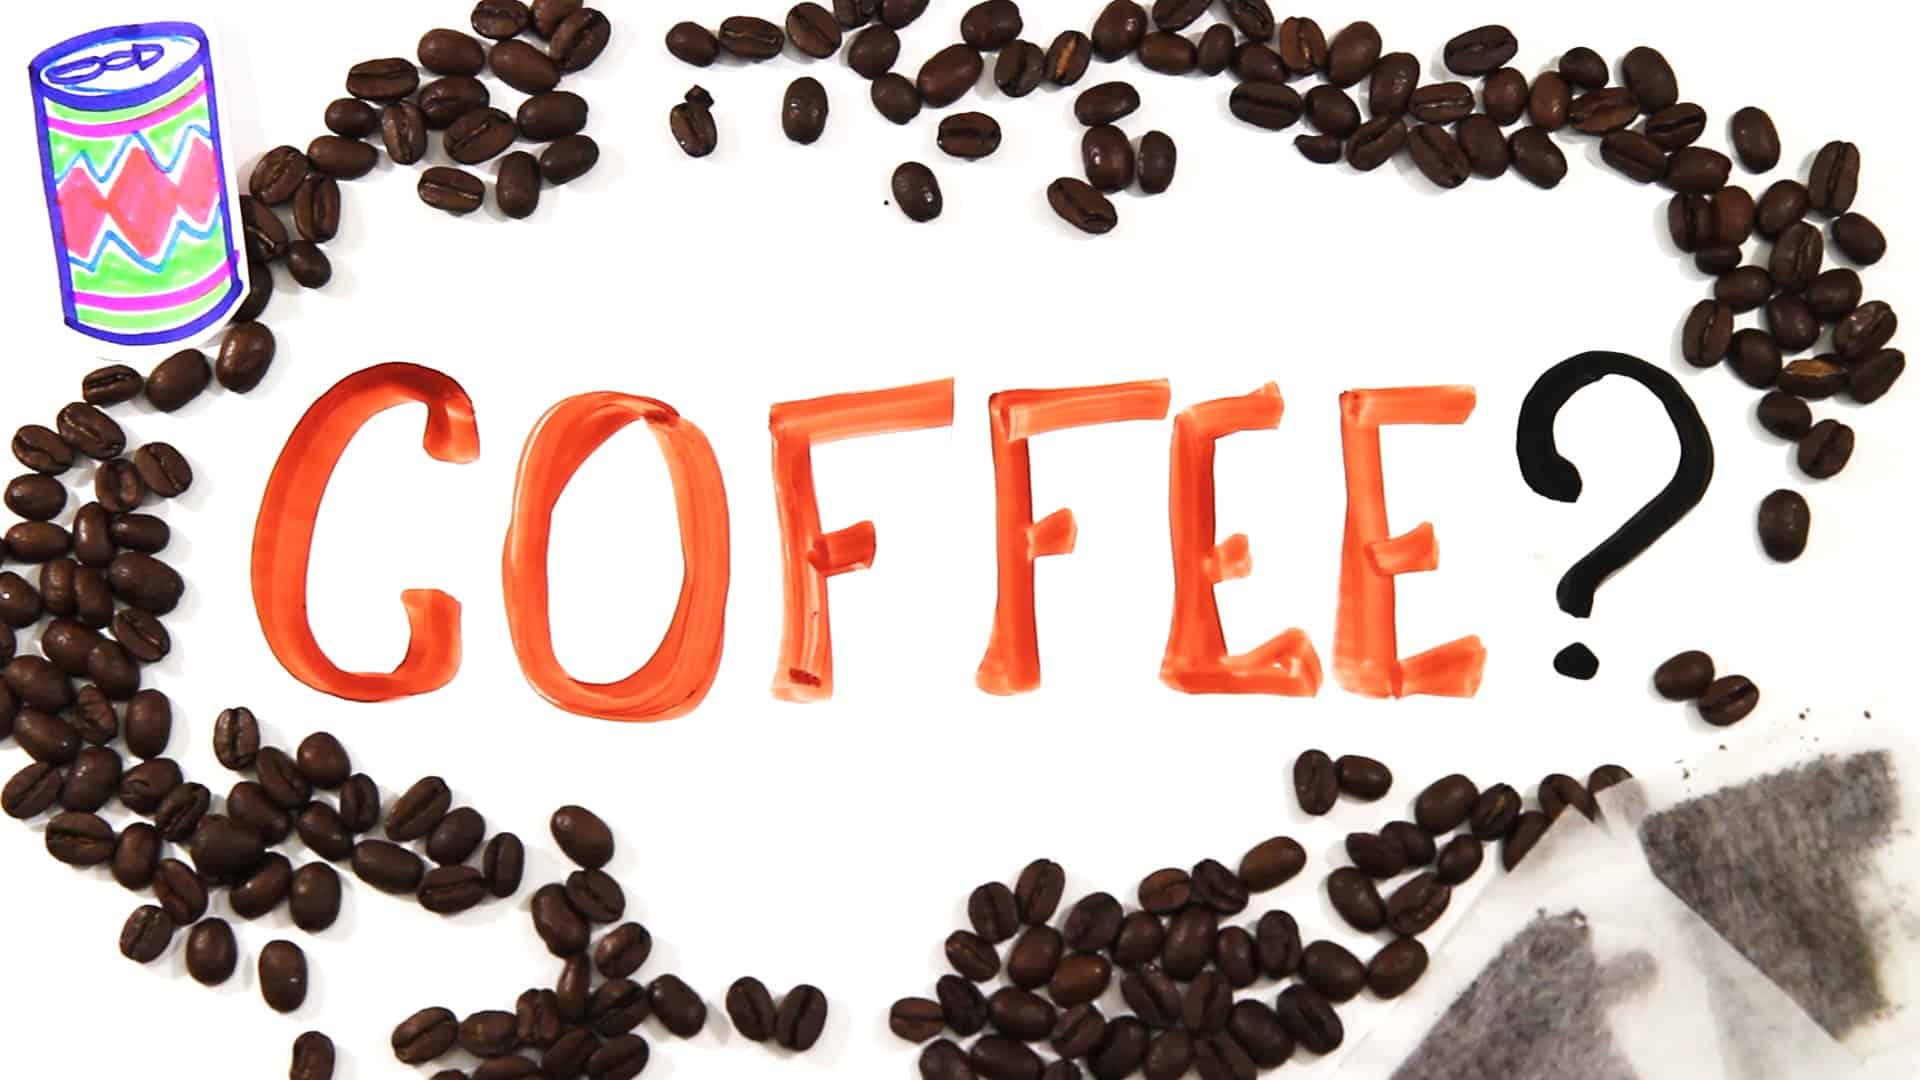 Trinkst du deinen Kaffee richtig?